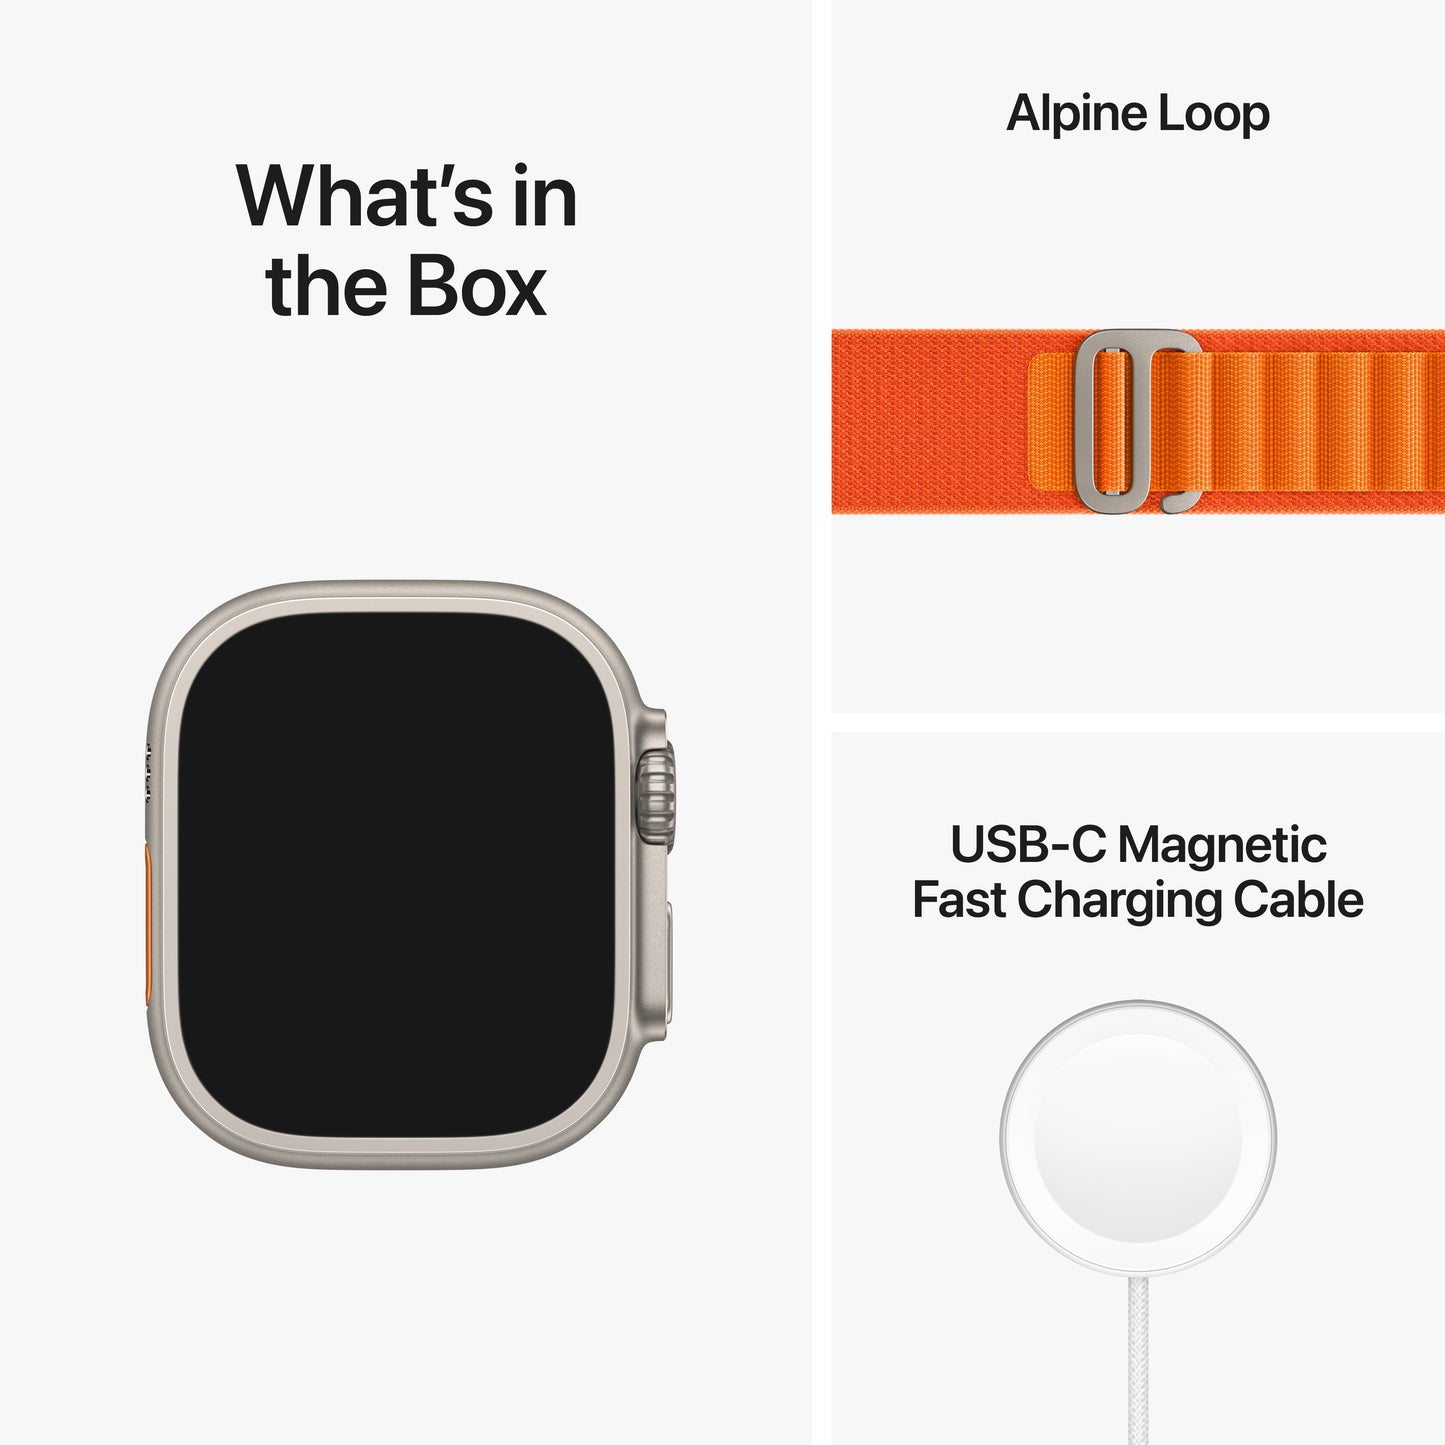 Apple Watch Ultra (GPS + Cellular) - Caja de titanio de 49 mm - Correa Loop Alpine naranja - Talla L